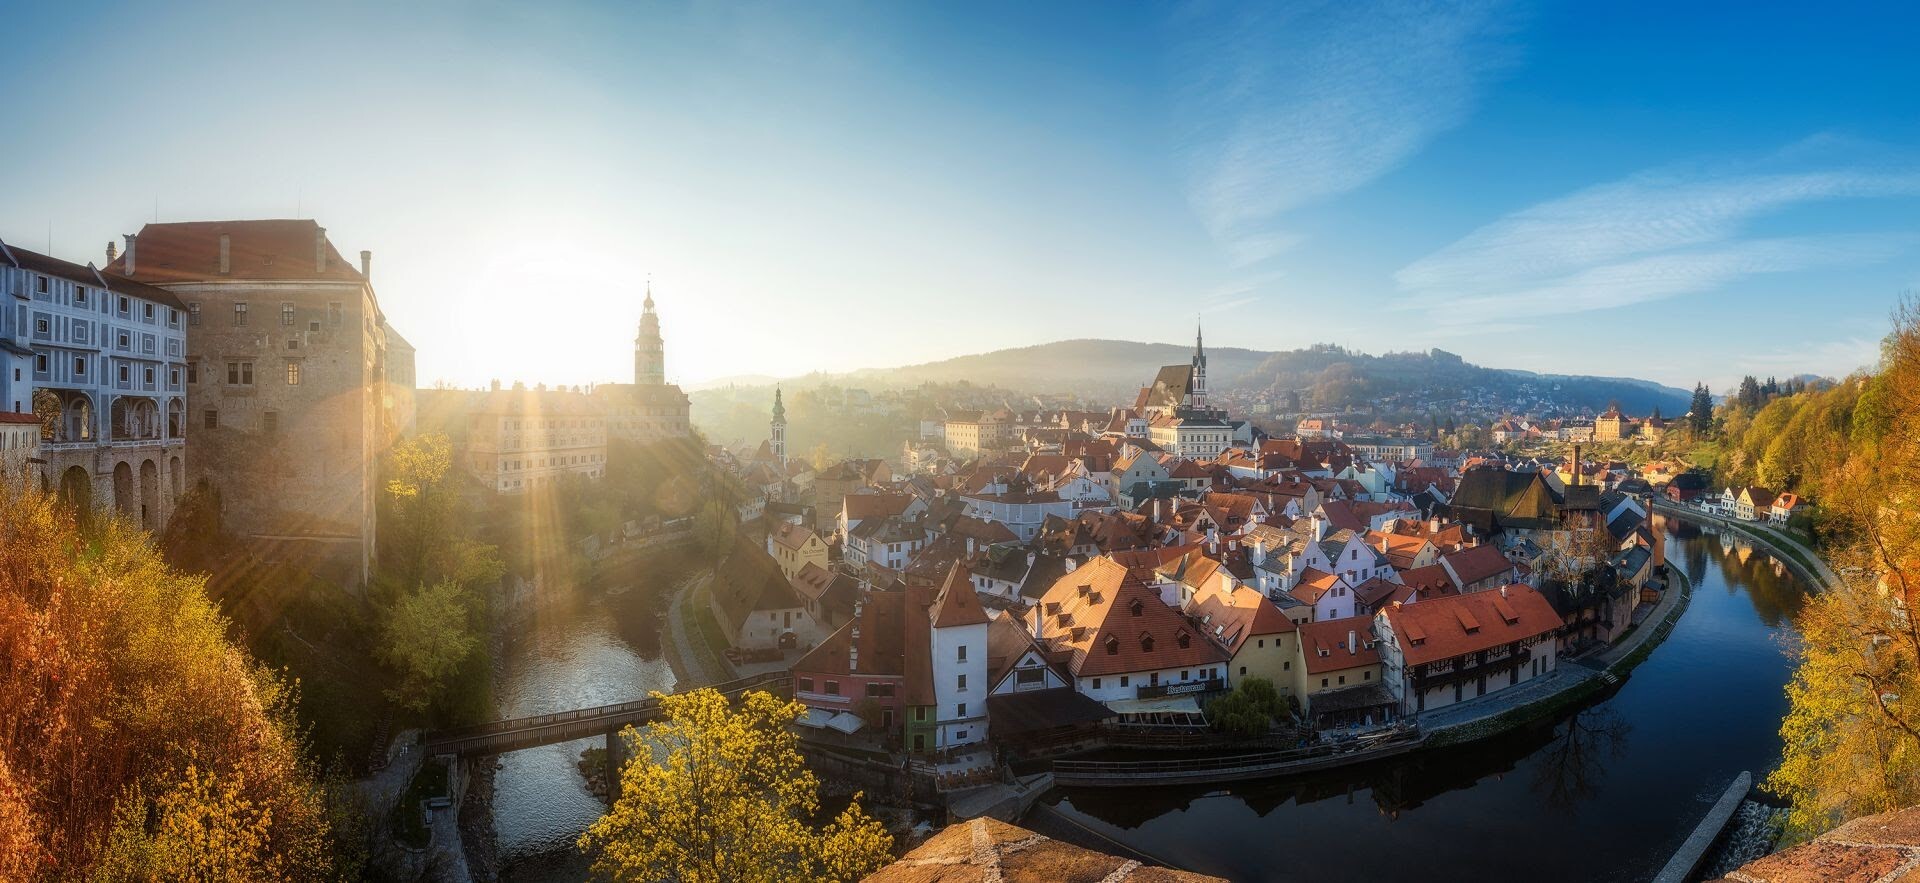 Vista da cidade medieval de Český Krumlov, na República Tcheca